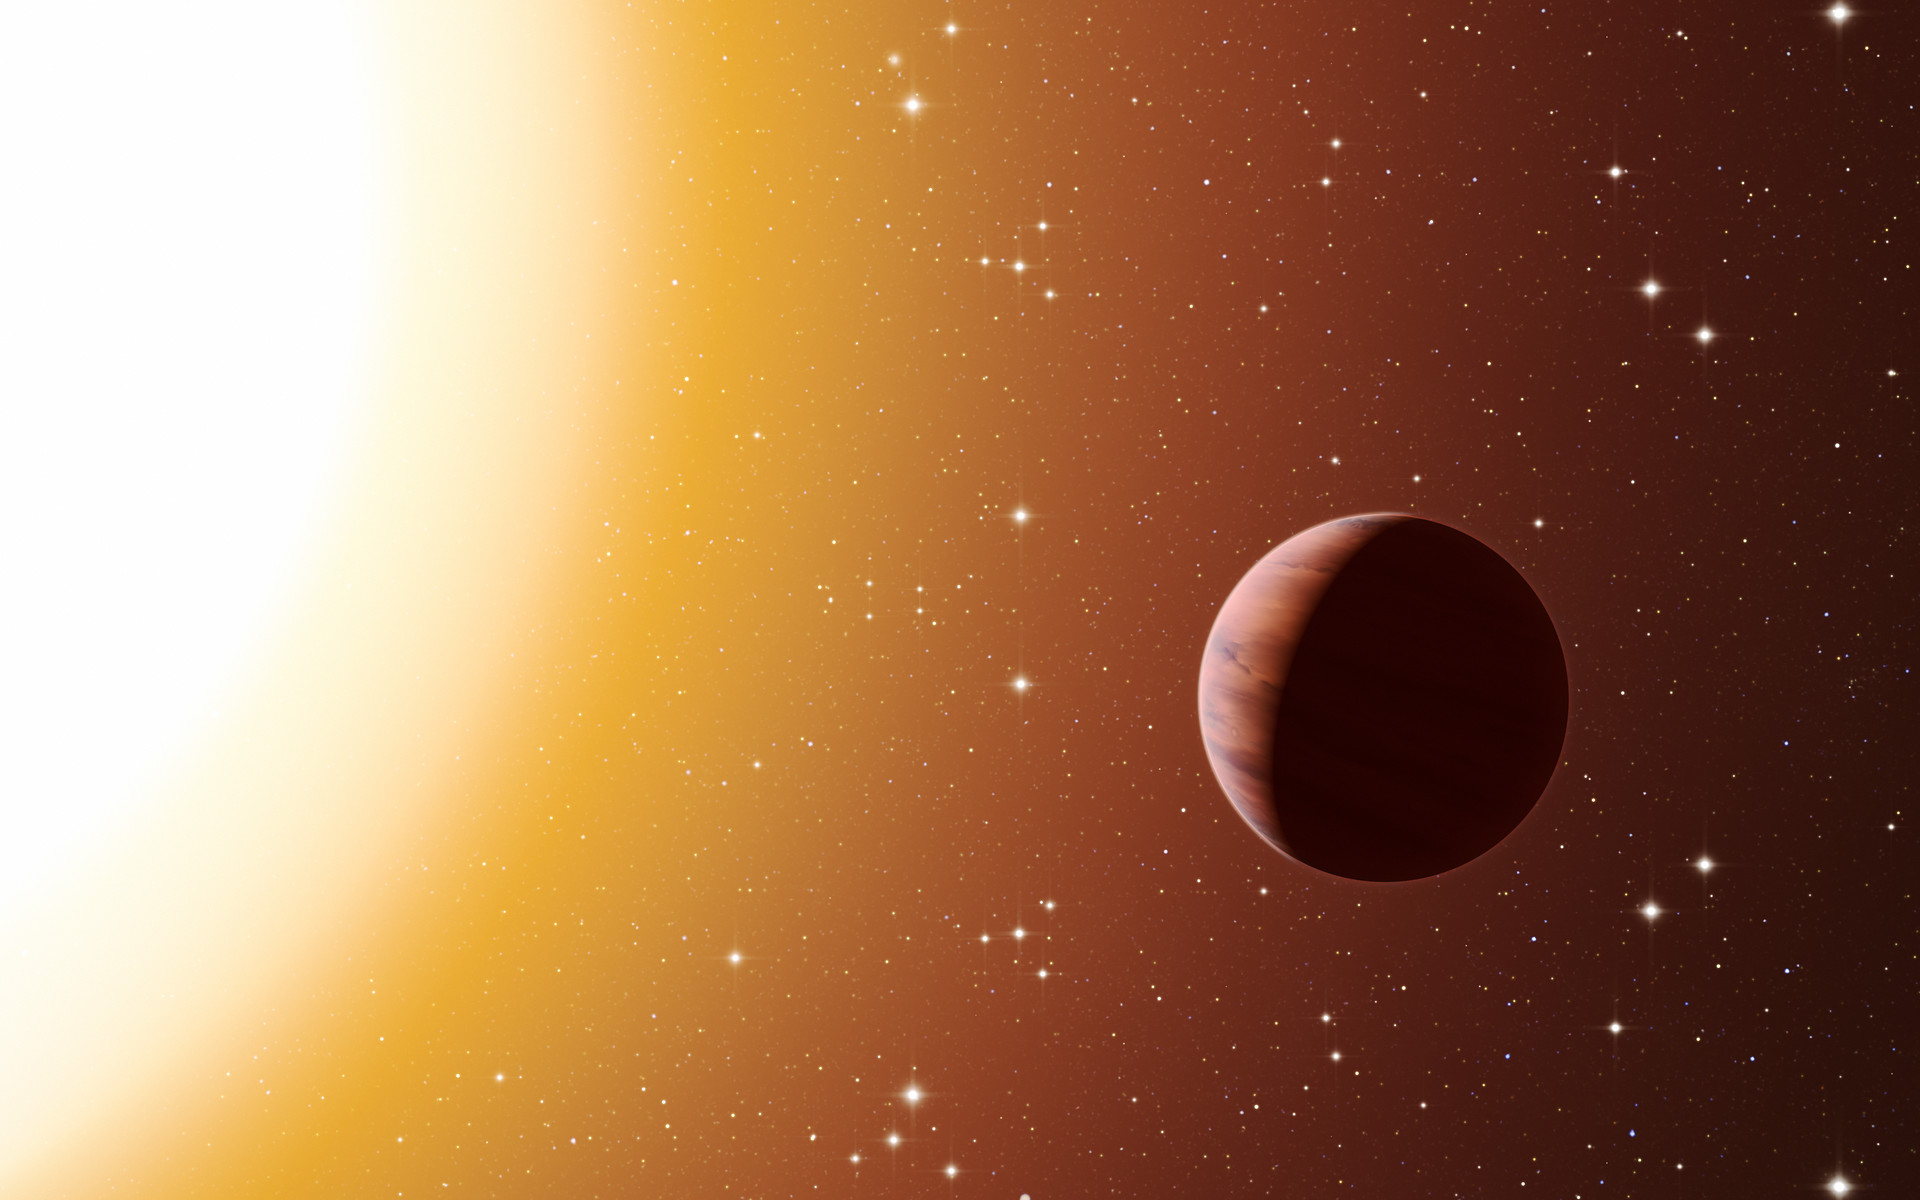 Sur cette vue d'artiste figure une planète de type Jupiter chaud en orbite proche autour de l'une des étoiles du riche et vieil amas Messier 67, dans la constellation du Crabe. Les astronomes ont découvert, au sein de l'essaim, bien plus de planètes de ce type qu'attendu. Ce surprenant résultat fait suite à l'utilisation de divers télescopes et instruments, parmi lesquels le spectrographe Harps à l'Observatoire de La Silla de l'ESO au Chili. L'environnement plus dense d'un amas favorise de plus fréquentes interactions entre planètes et étoiles proches, ce qui peut expliquer cet excès de Jupiter chauds. © ESO, L. Calçada